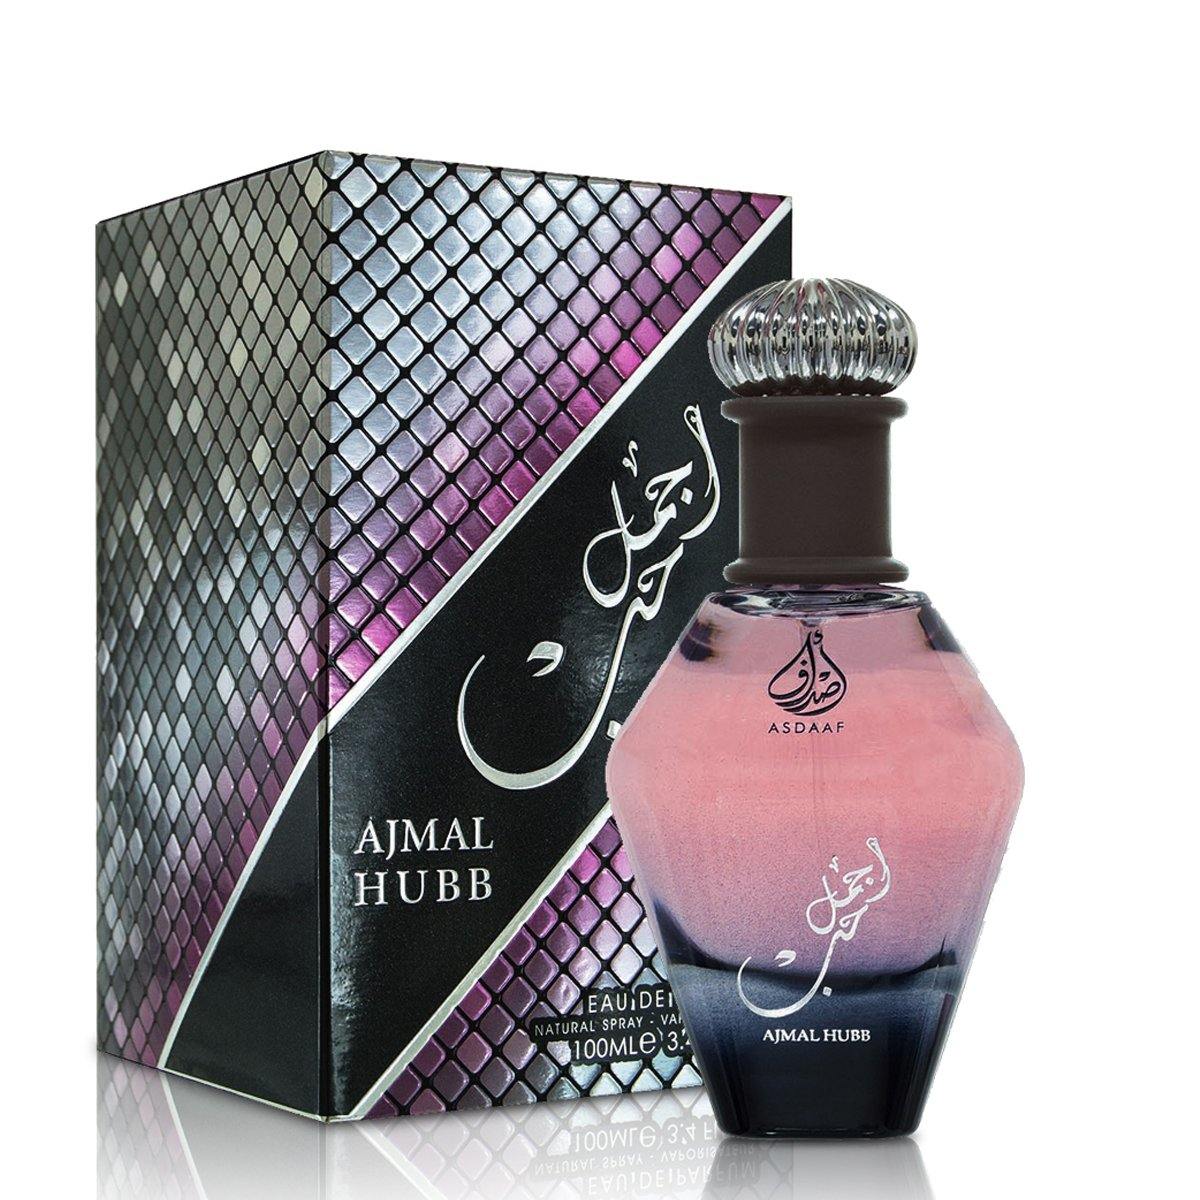 100 ml Eau de Parfume Asdaaf Ajmal Hubb Jázmin Fás Illat Nőknek - Ékszer Galéria